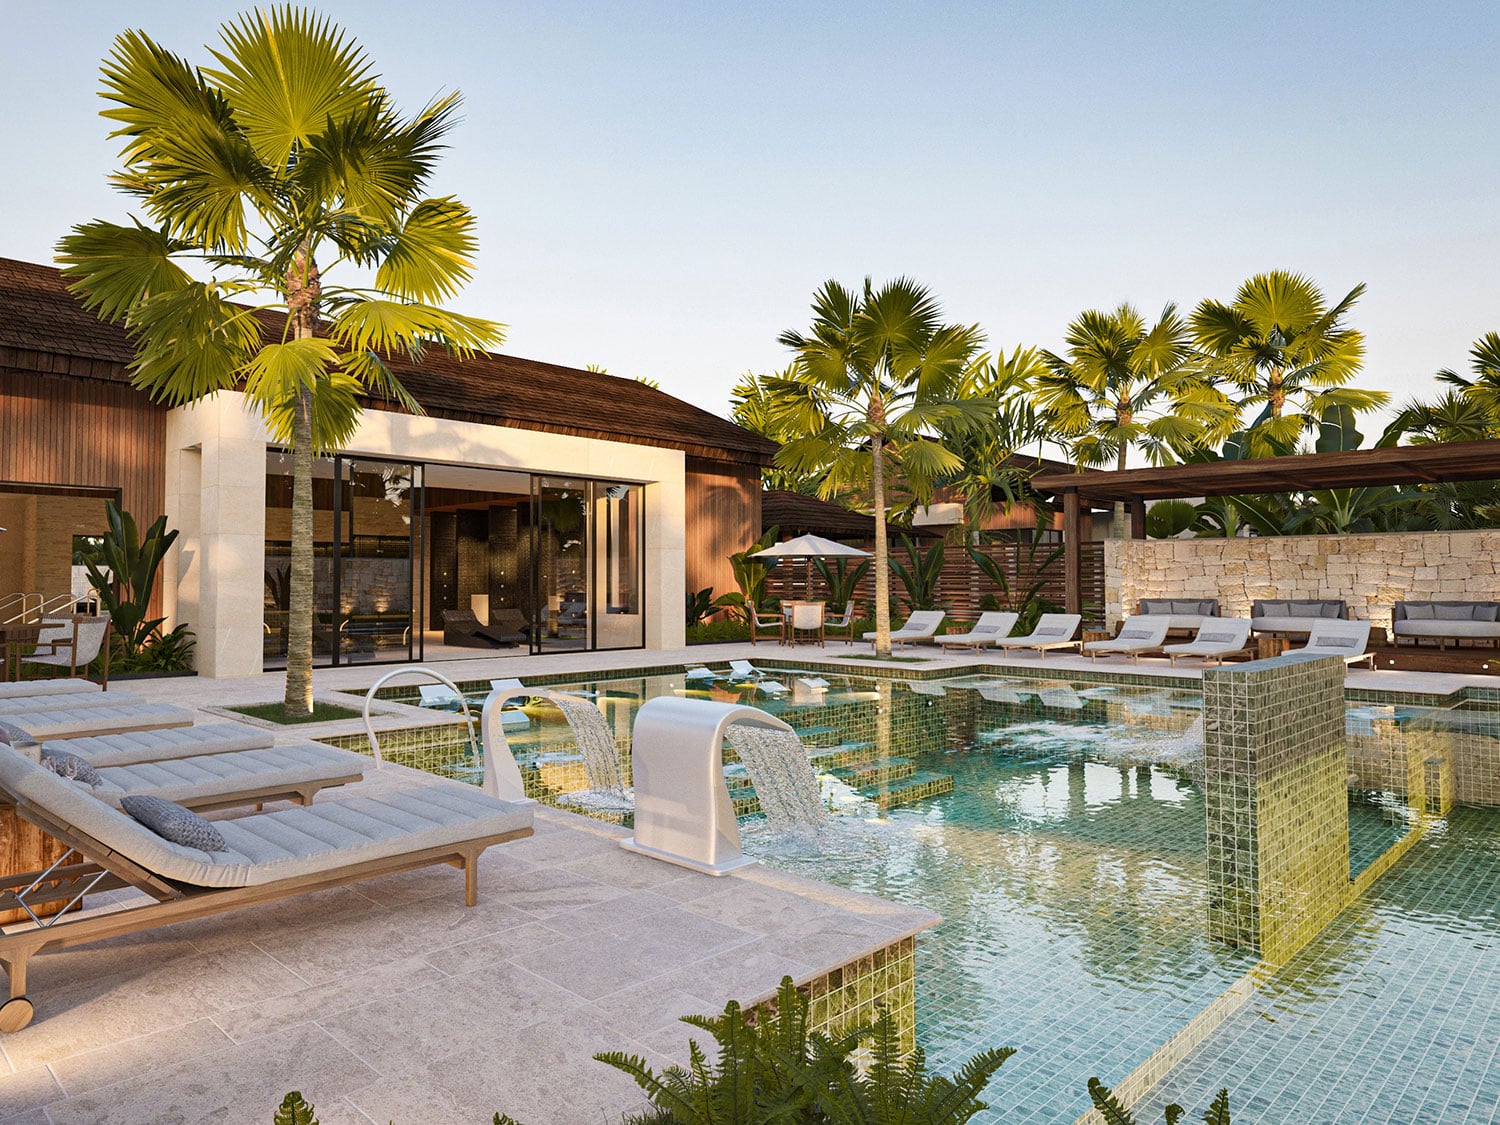 The spa pool at Casa de Campo Resort and Villas in the Dominican Republic.